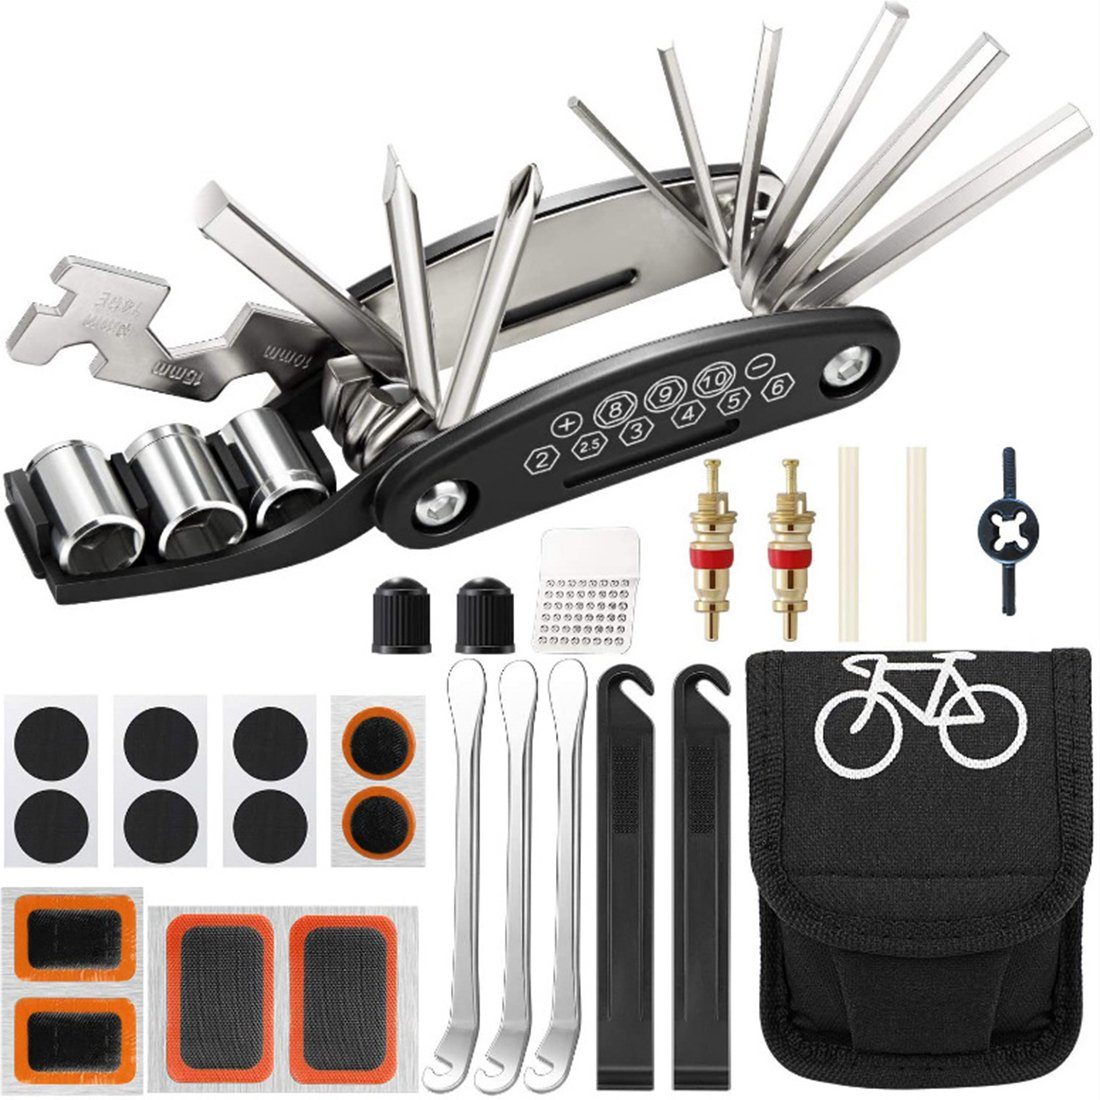 HYTIREBY Fahrrad-Reparaturset Fahrrad-Multitool 16 in 1 Werkzeuge für Fahrrad Reparatur, Fahrradflickzeug Reparaturset Multifunktionswerkzeug mit Tasche